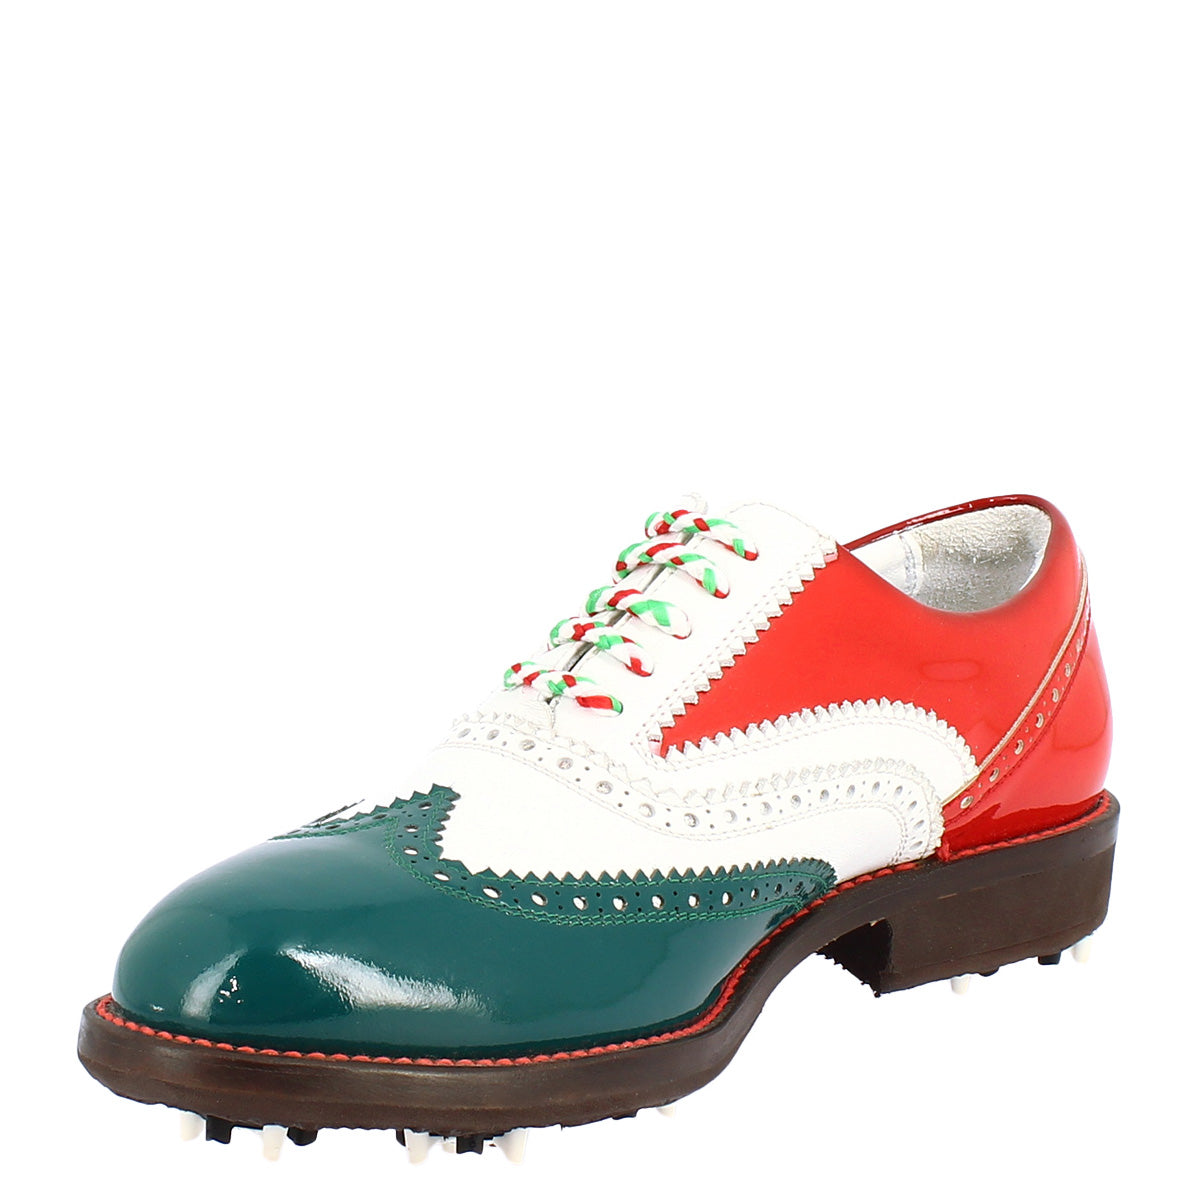 Handgefertigte Herren-Golfschuhe in den Farben der italienischen Flagge